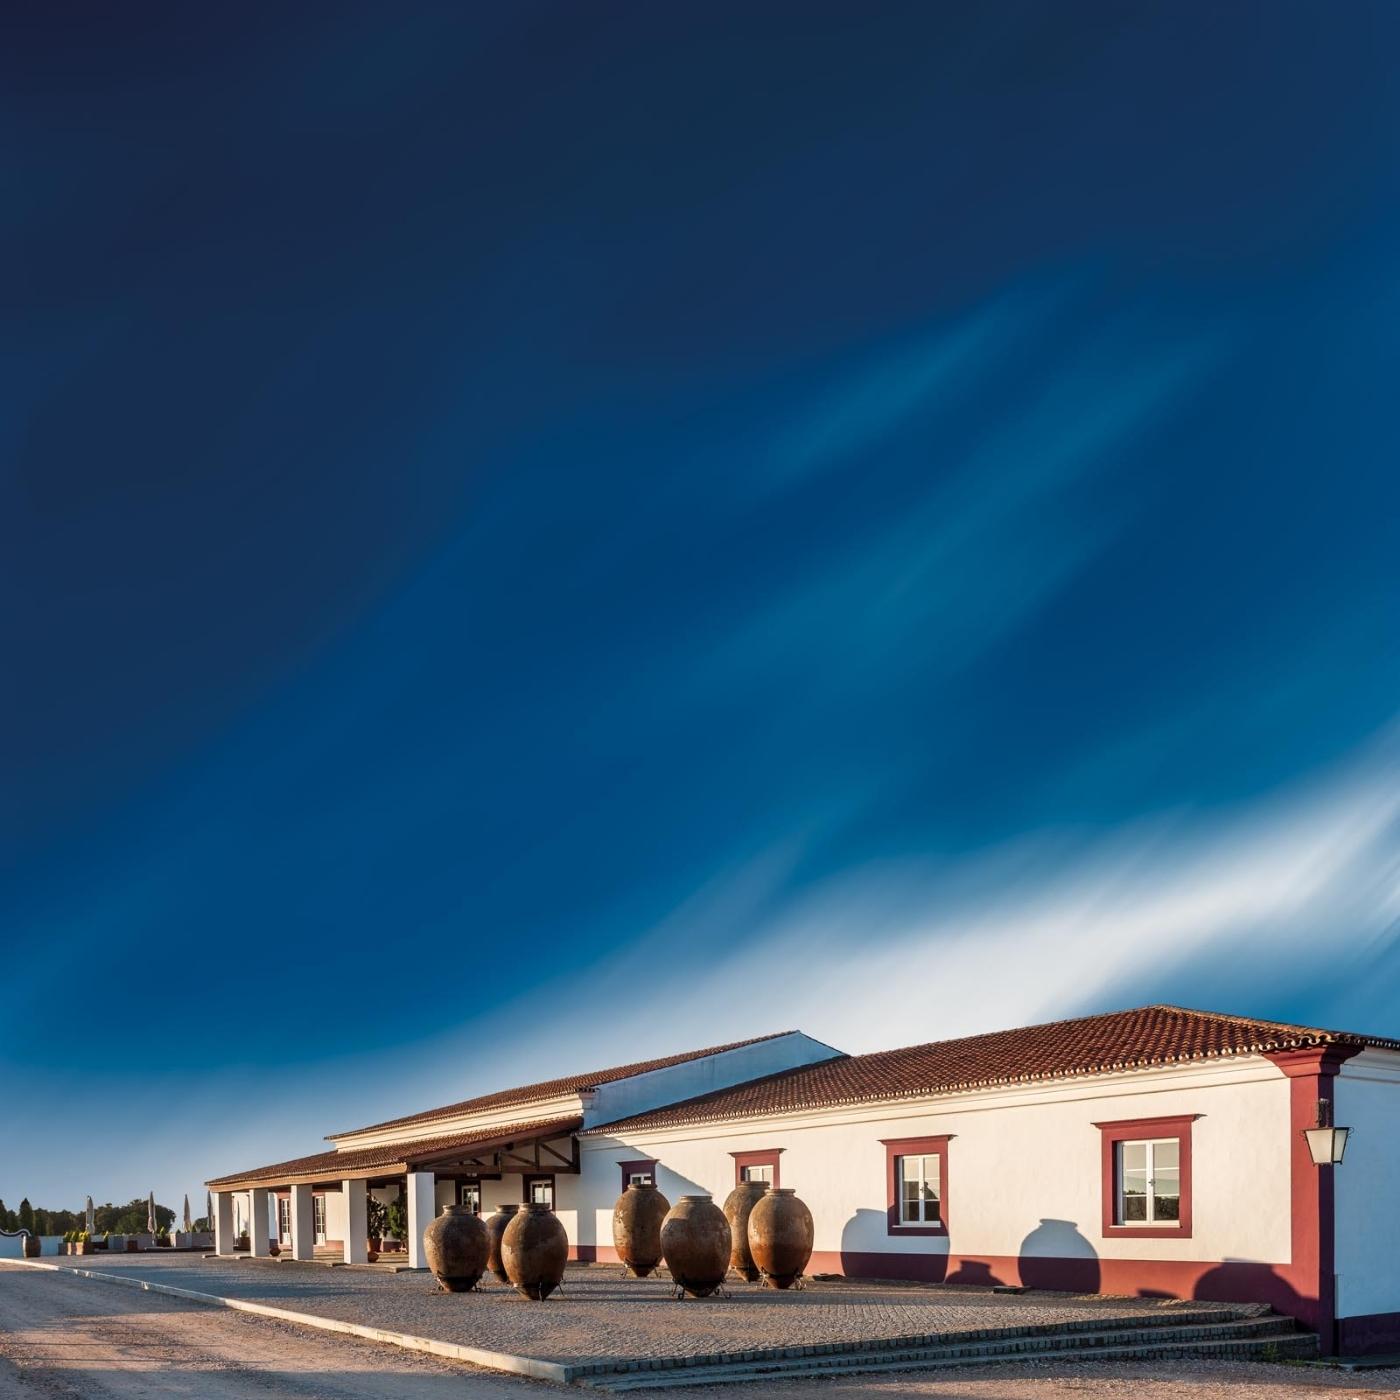 Erlesene Weine vom Weingut HERDADE DAS SERVAS aus Portugal/Alentejo. Bild vom Weingut, weiß-rotes Gebäude mit kleinen Bäumen an einer Straße, oberhalb ein azurblauer Himmel.